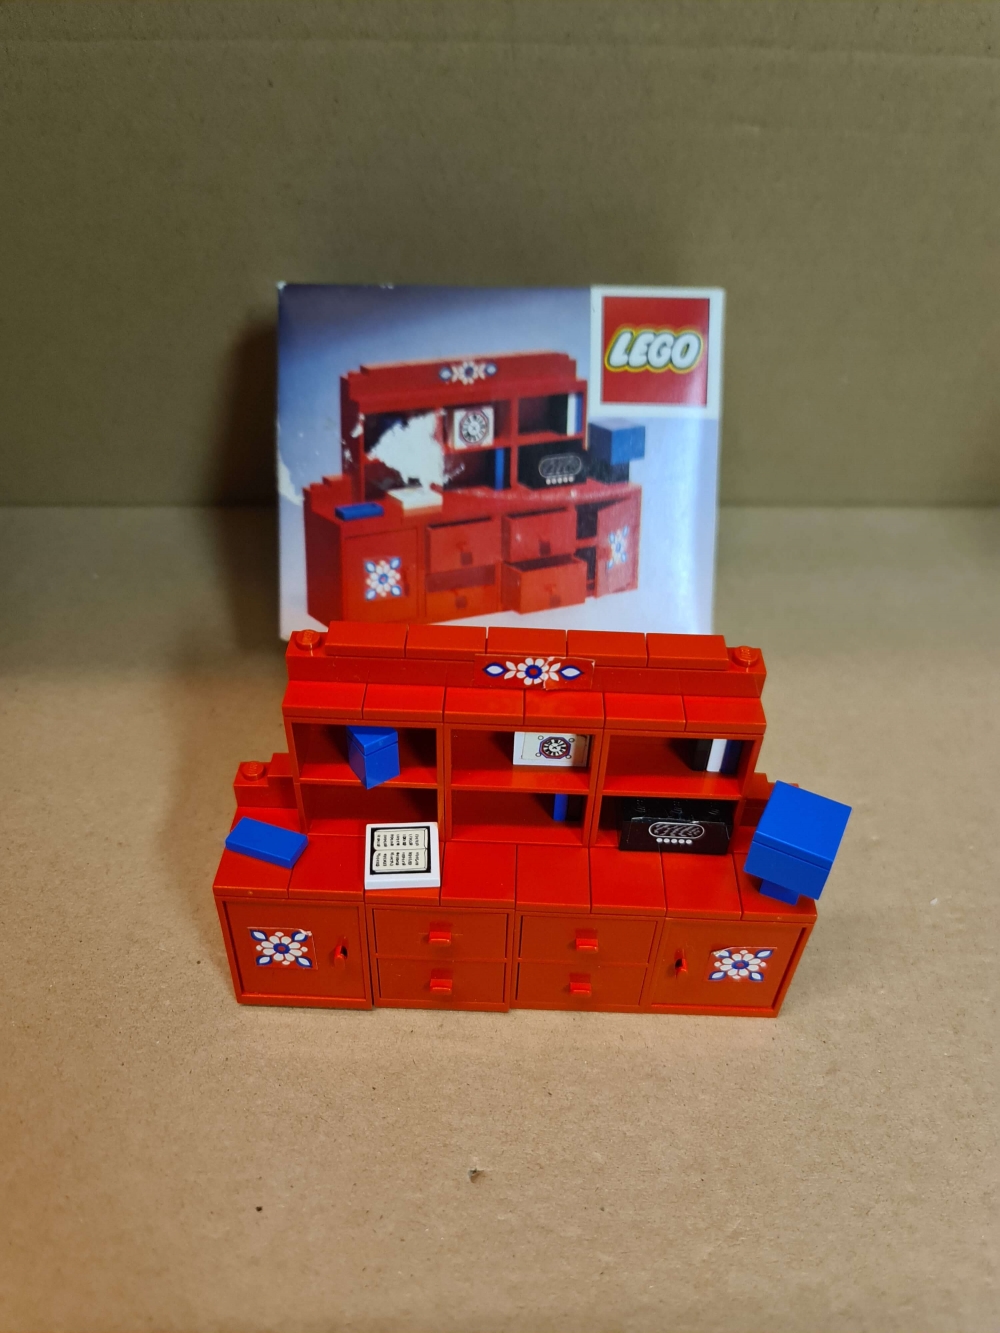 Sett 194 fra Lego Homemaker serien.

Nydelig sett. Ser ut som nytt.
Komplett med eske uten manual.